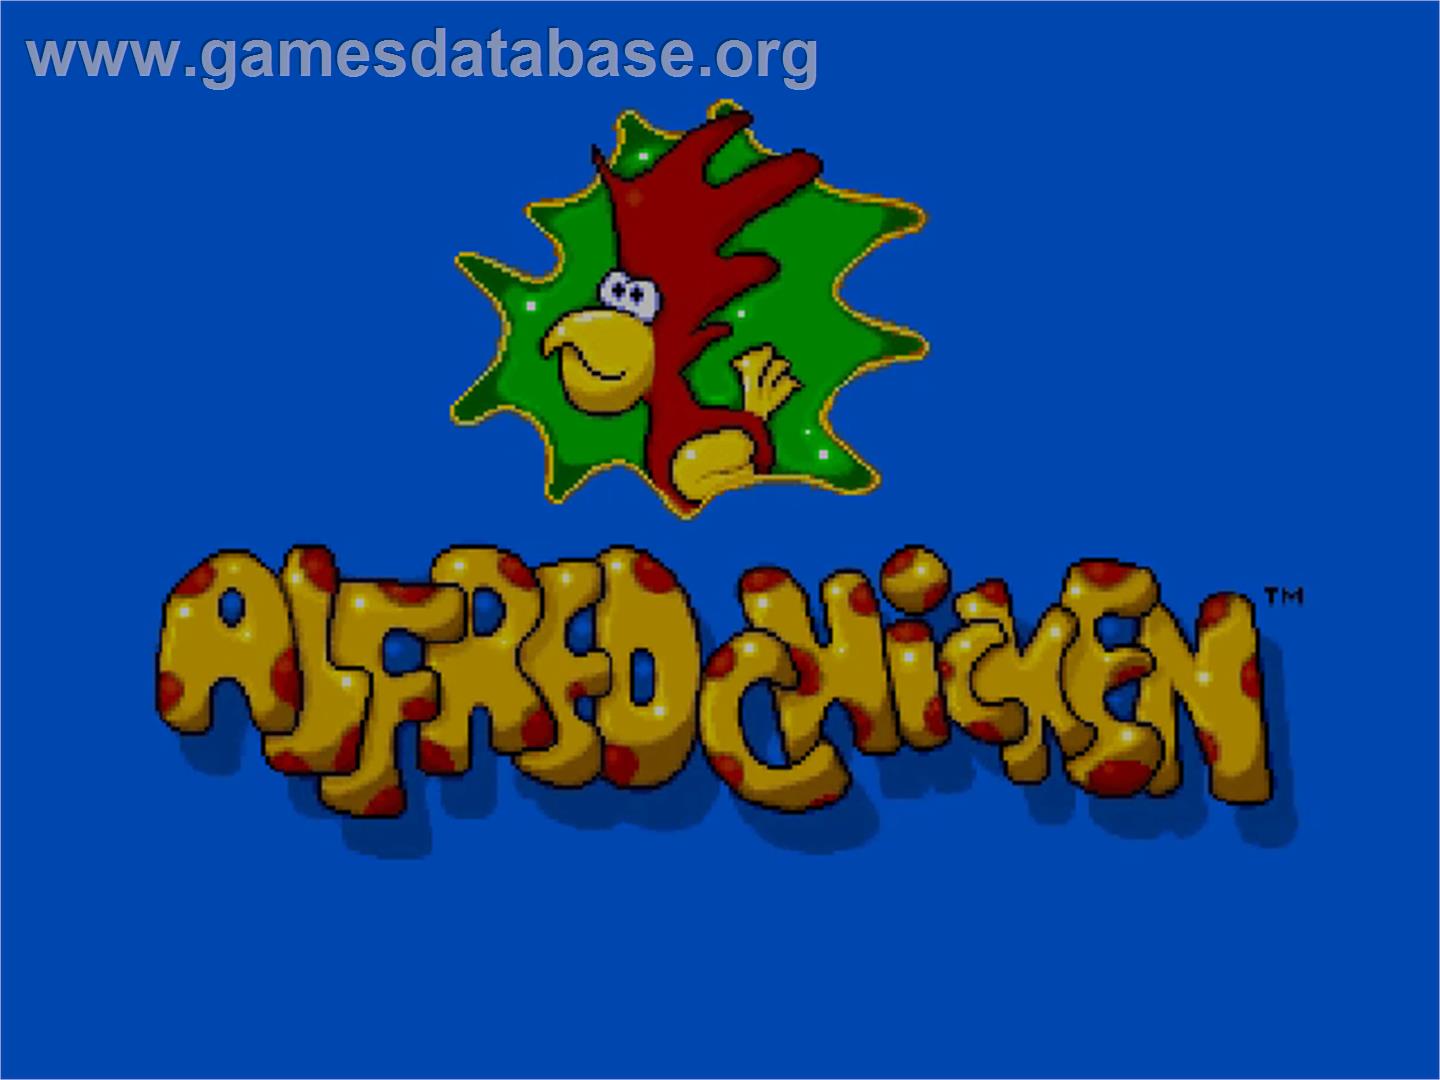 Alfred Chicken - Commodore Amiga CD32 - Artwork - Title Screen